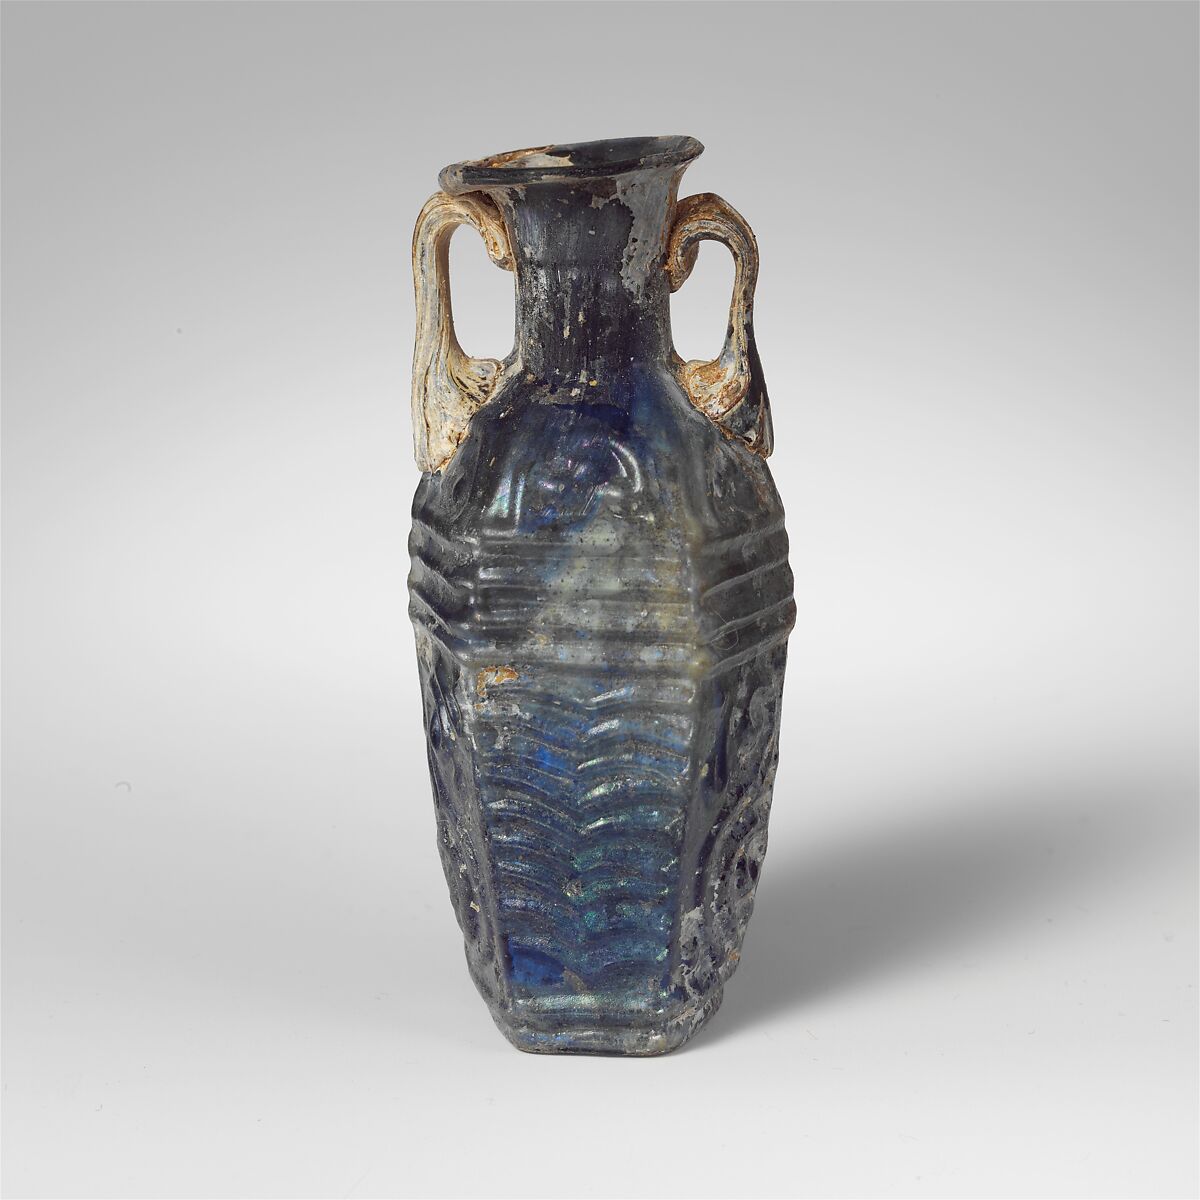 Glass hexagonal bottle, Glass, Roman 